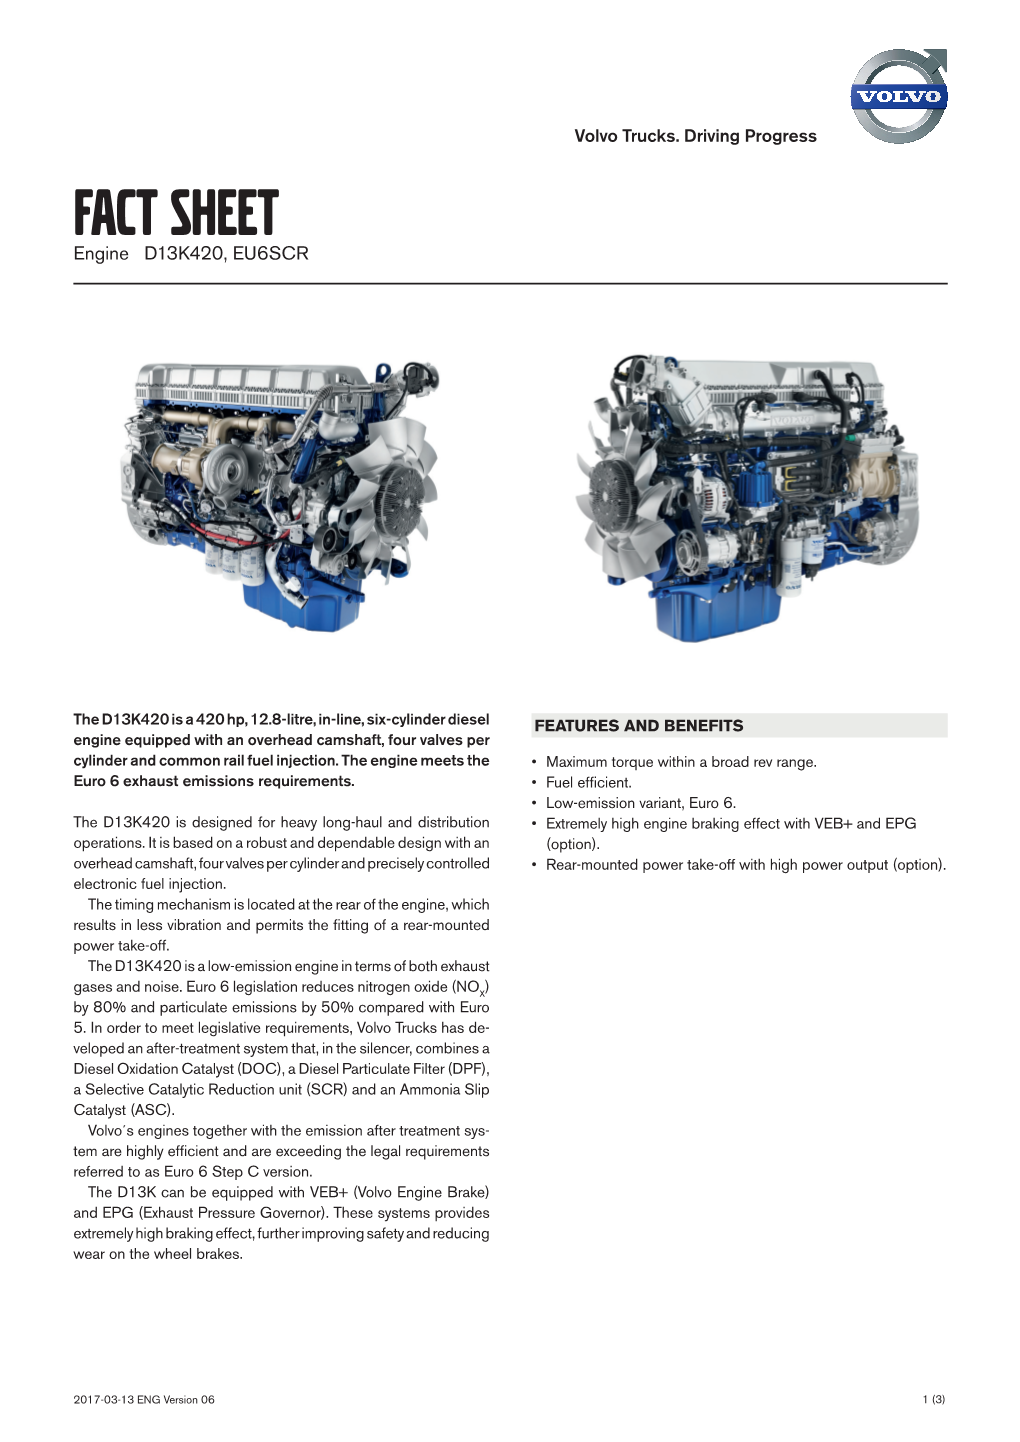 FACT SHEET Engine D13K420, EU6SCR